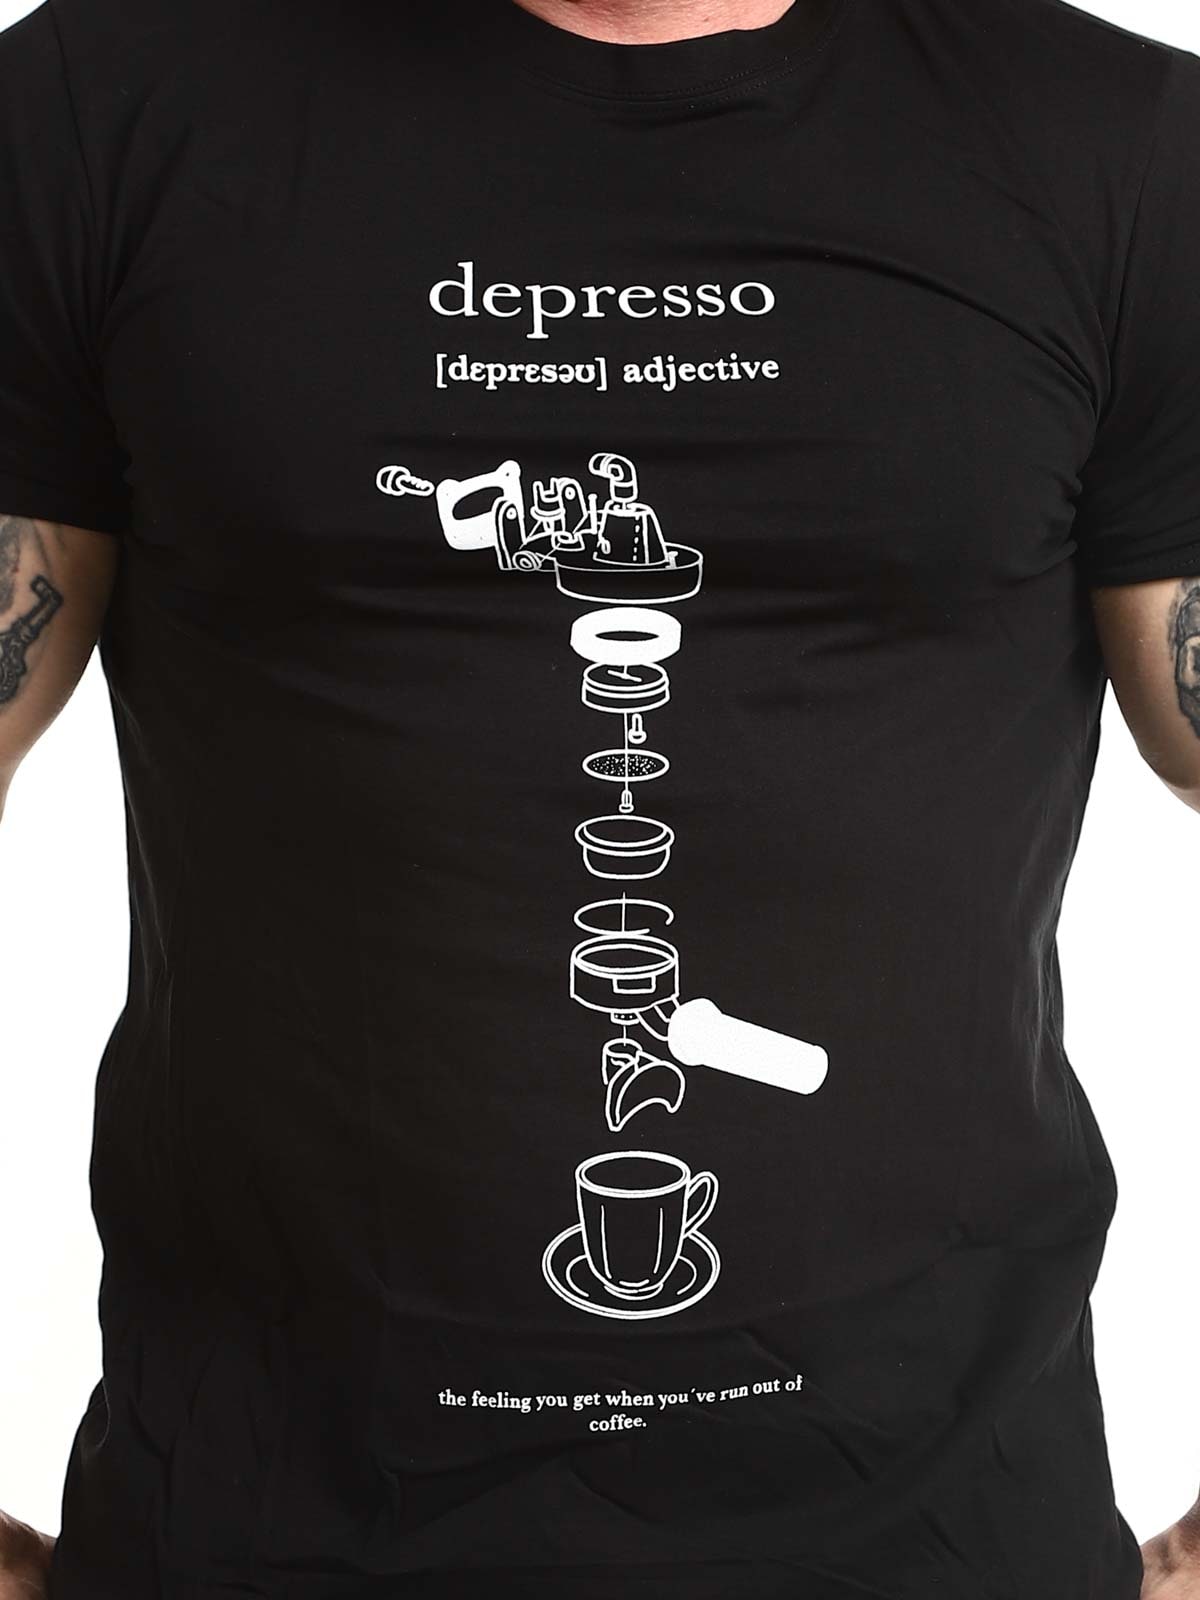 Depresso-Tshirt_1.jpg